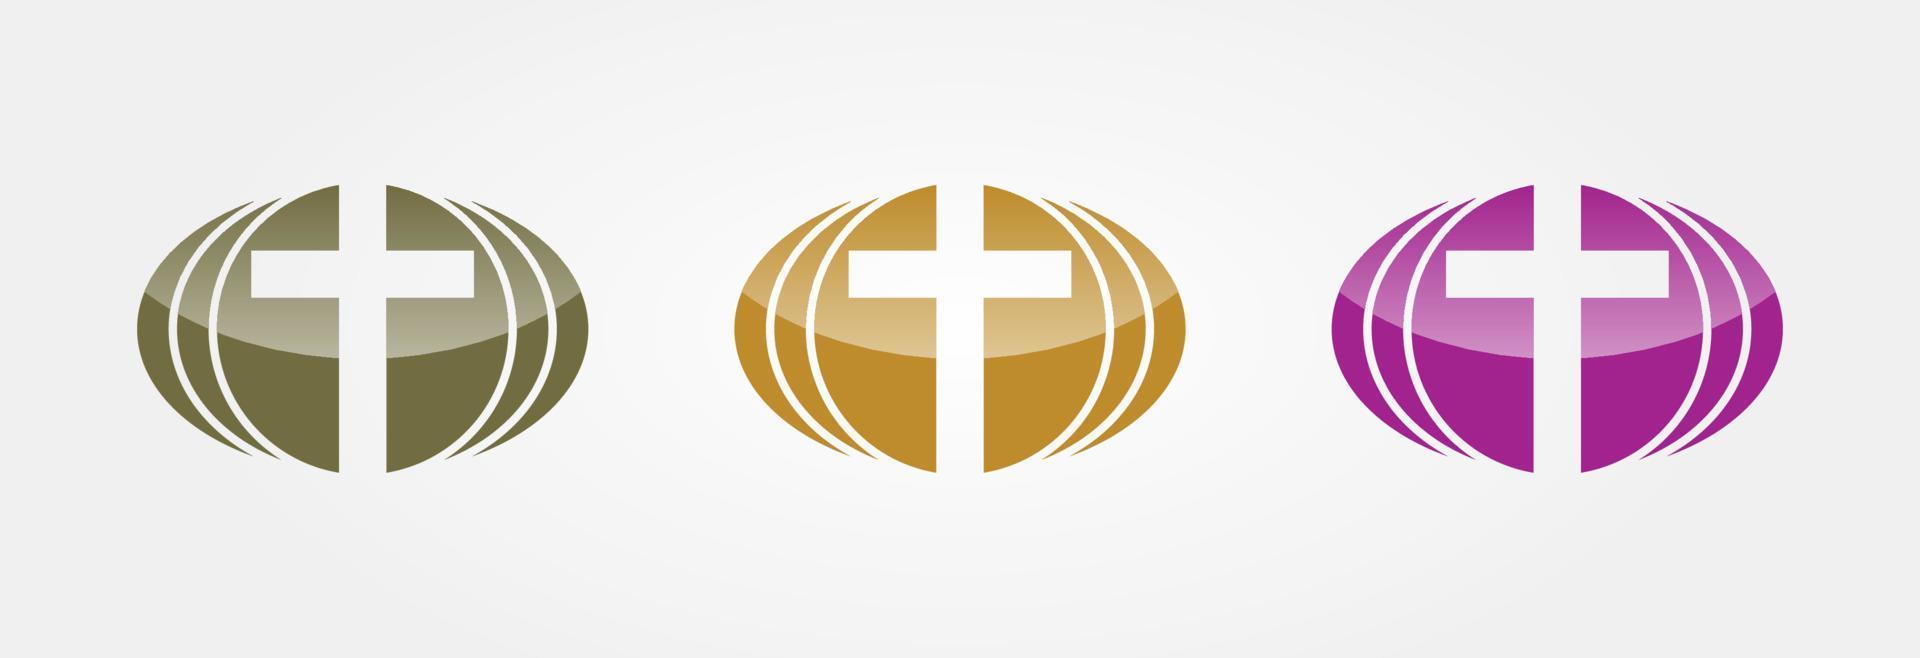 Symbole religieux 3 couleurs métallisées. chrétien, catholique. foi, logo vectoriel d'alliance de prière